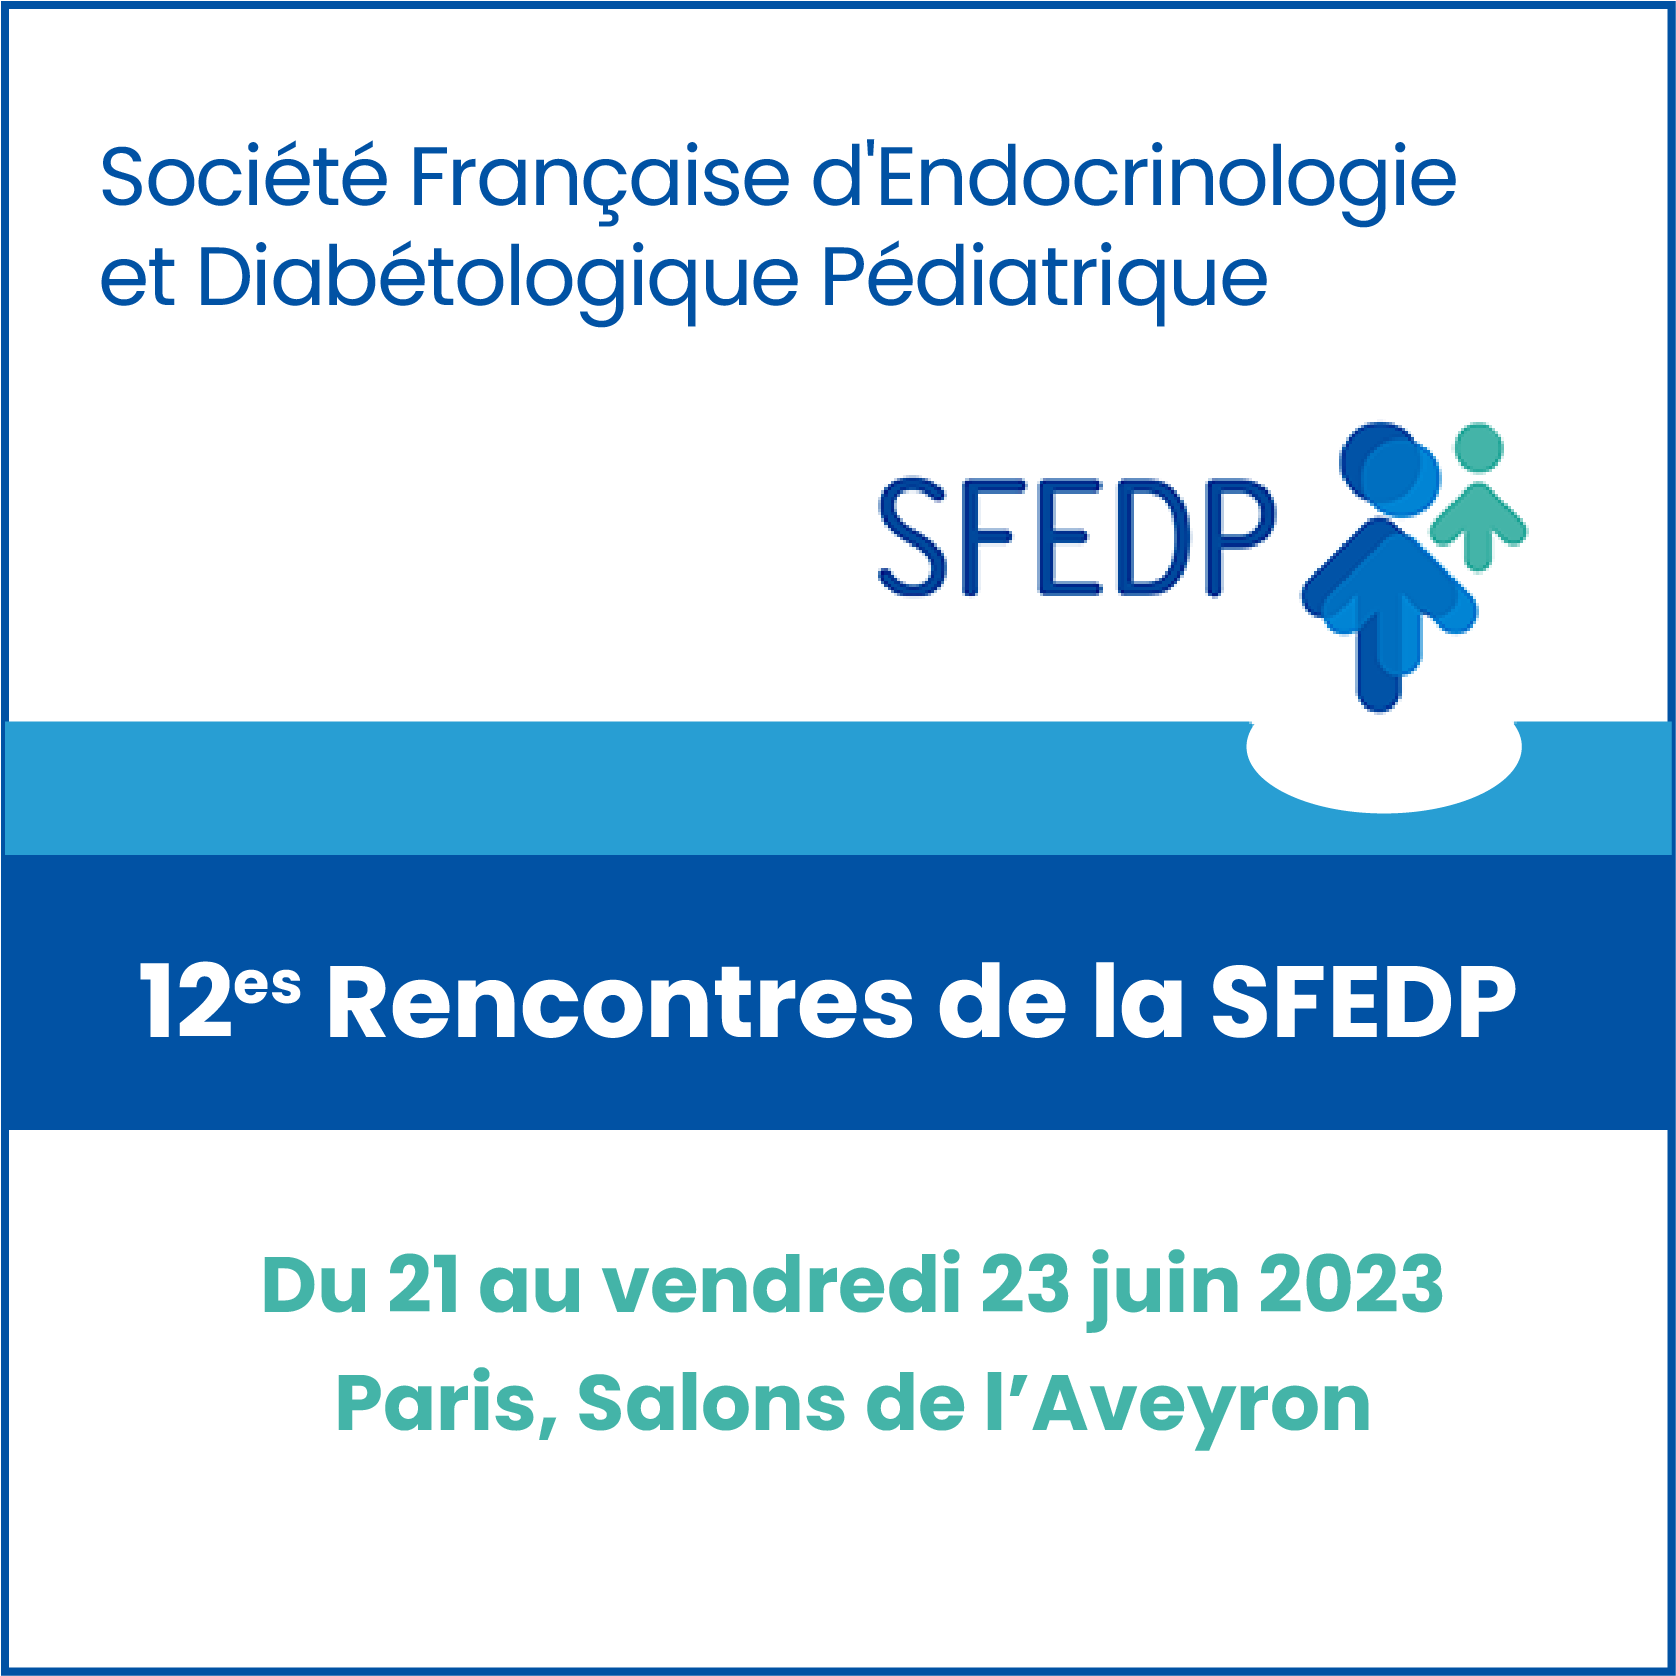 12es Rencontres de la Société Française d'Endocrinologie et Diabétologique Pédiatrique - SFEDP 2023